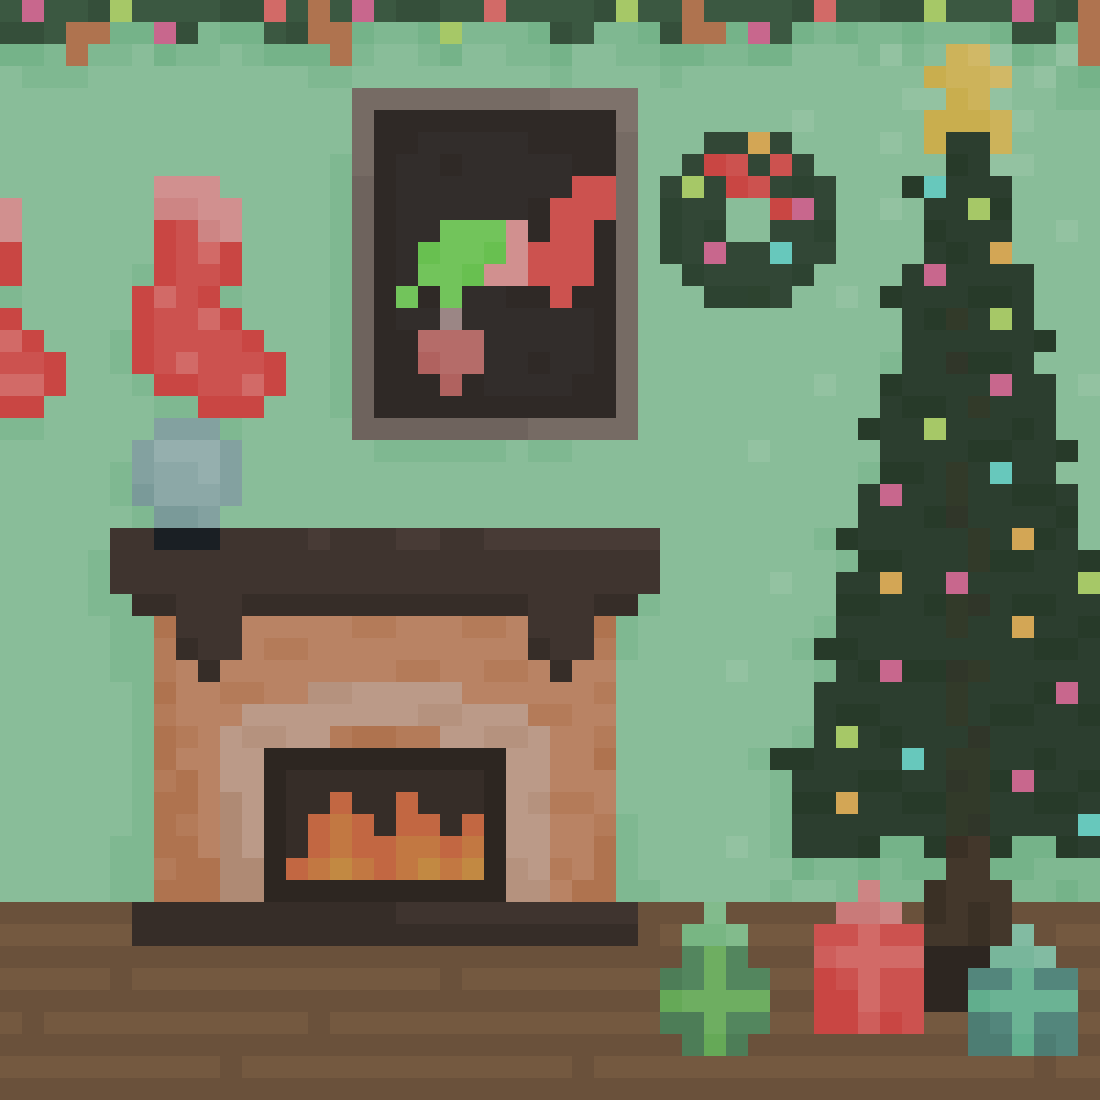 A christmas themed living room